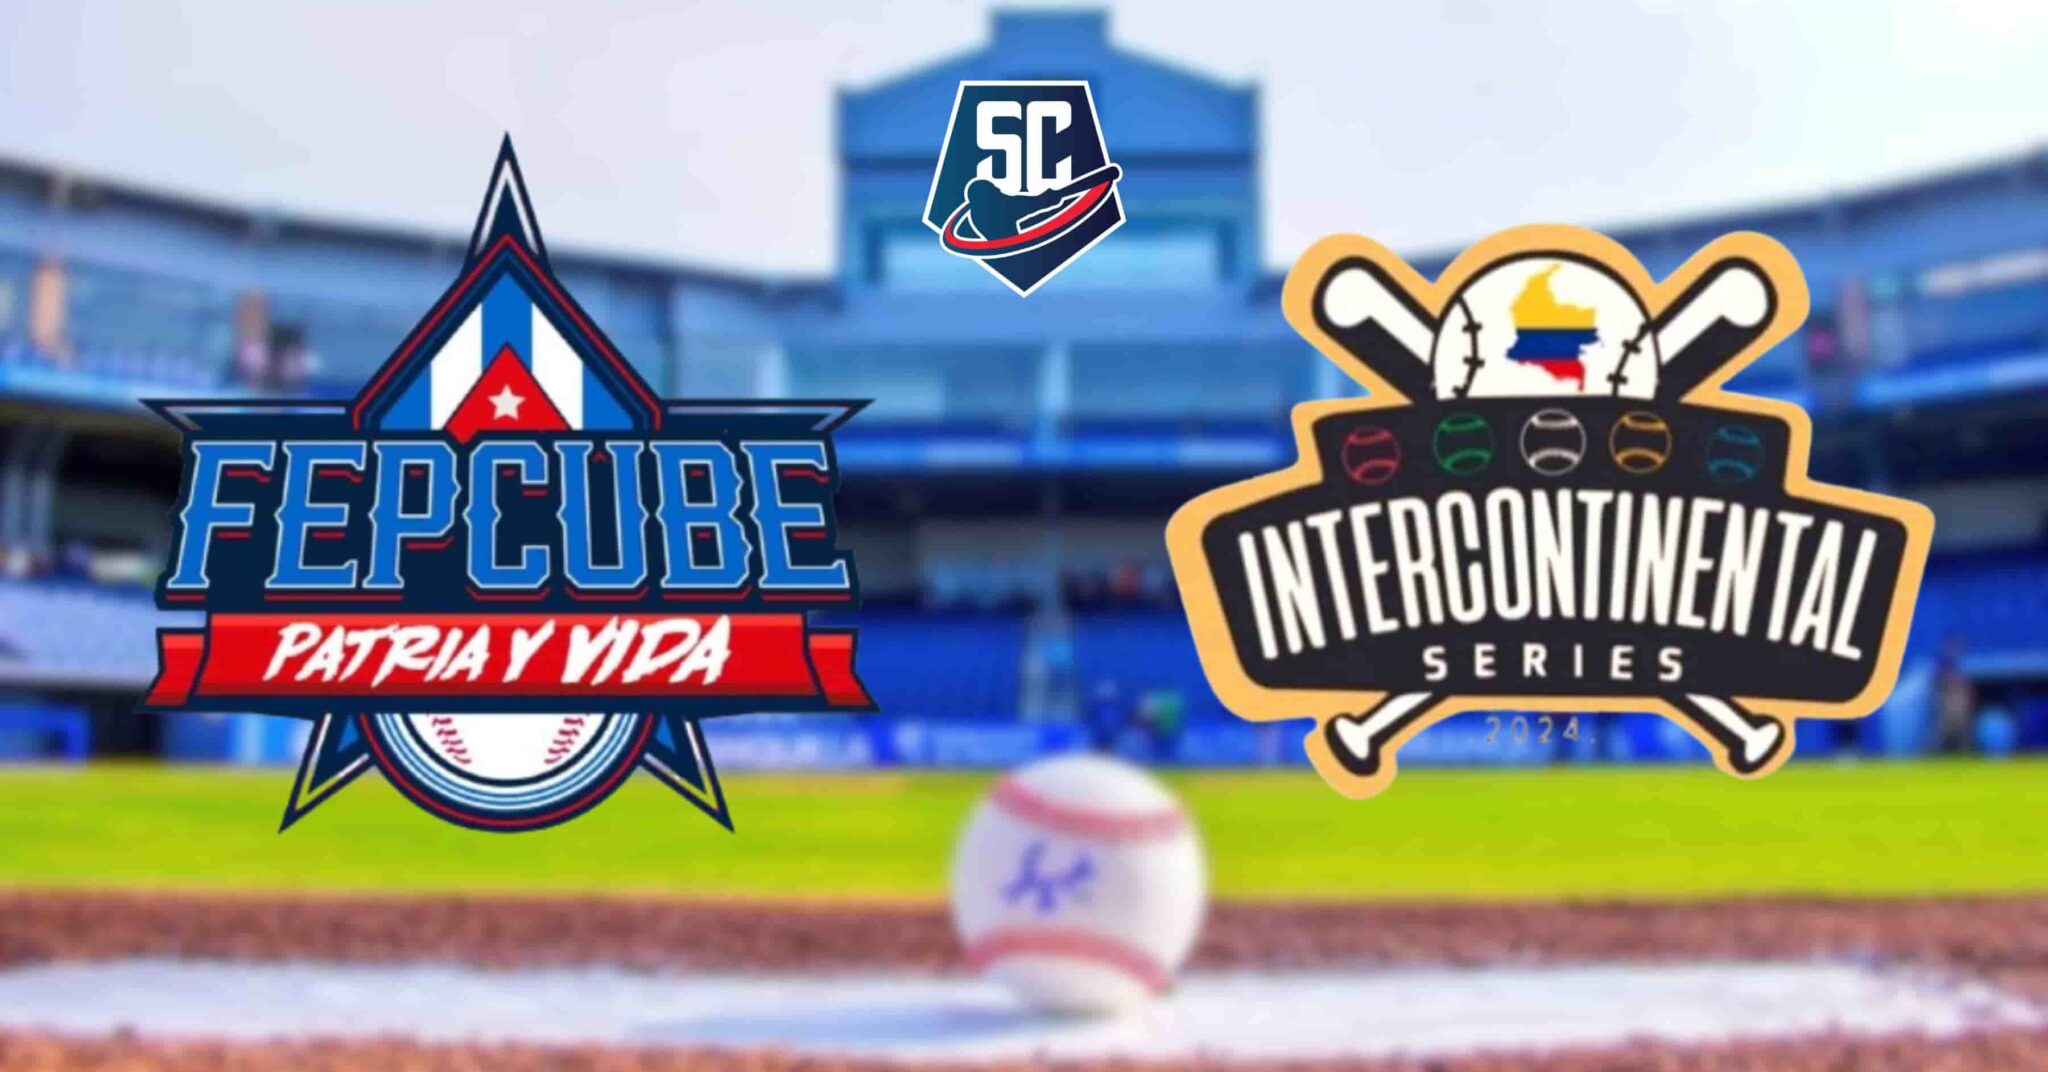 La Federación Profesional Cubana de Beisbol (FEPCUBE) ya conoce su calendario para la Serie Intercontinental que se disputará en Colombia.